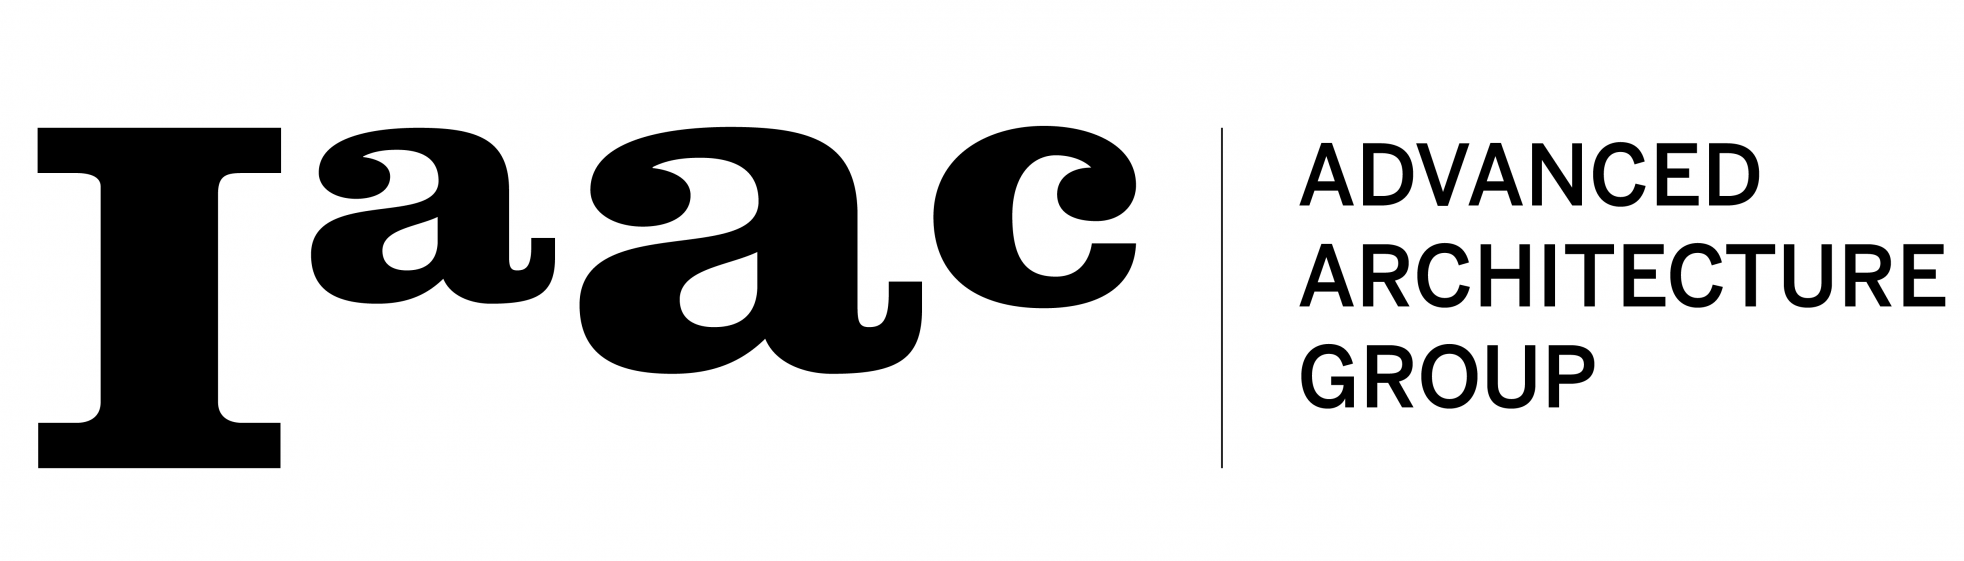 IAAC-LOGO-AAG-group-01-1-1964x561.png